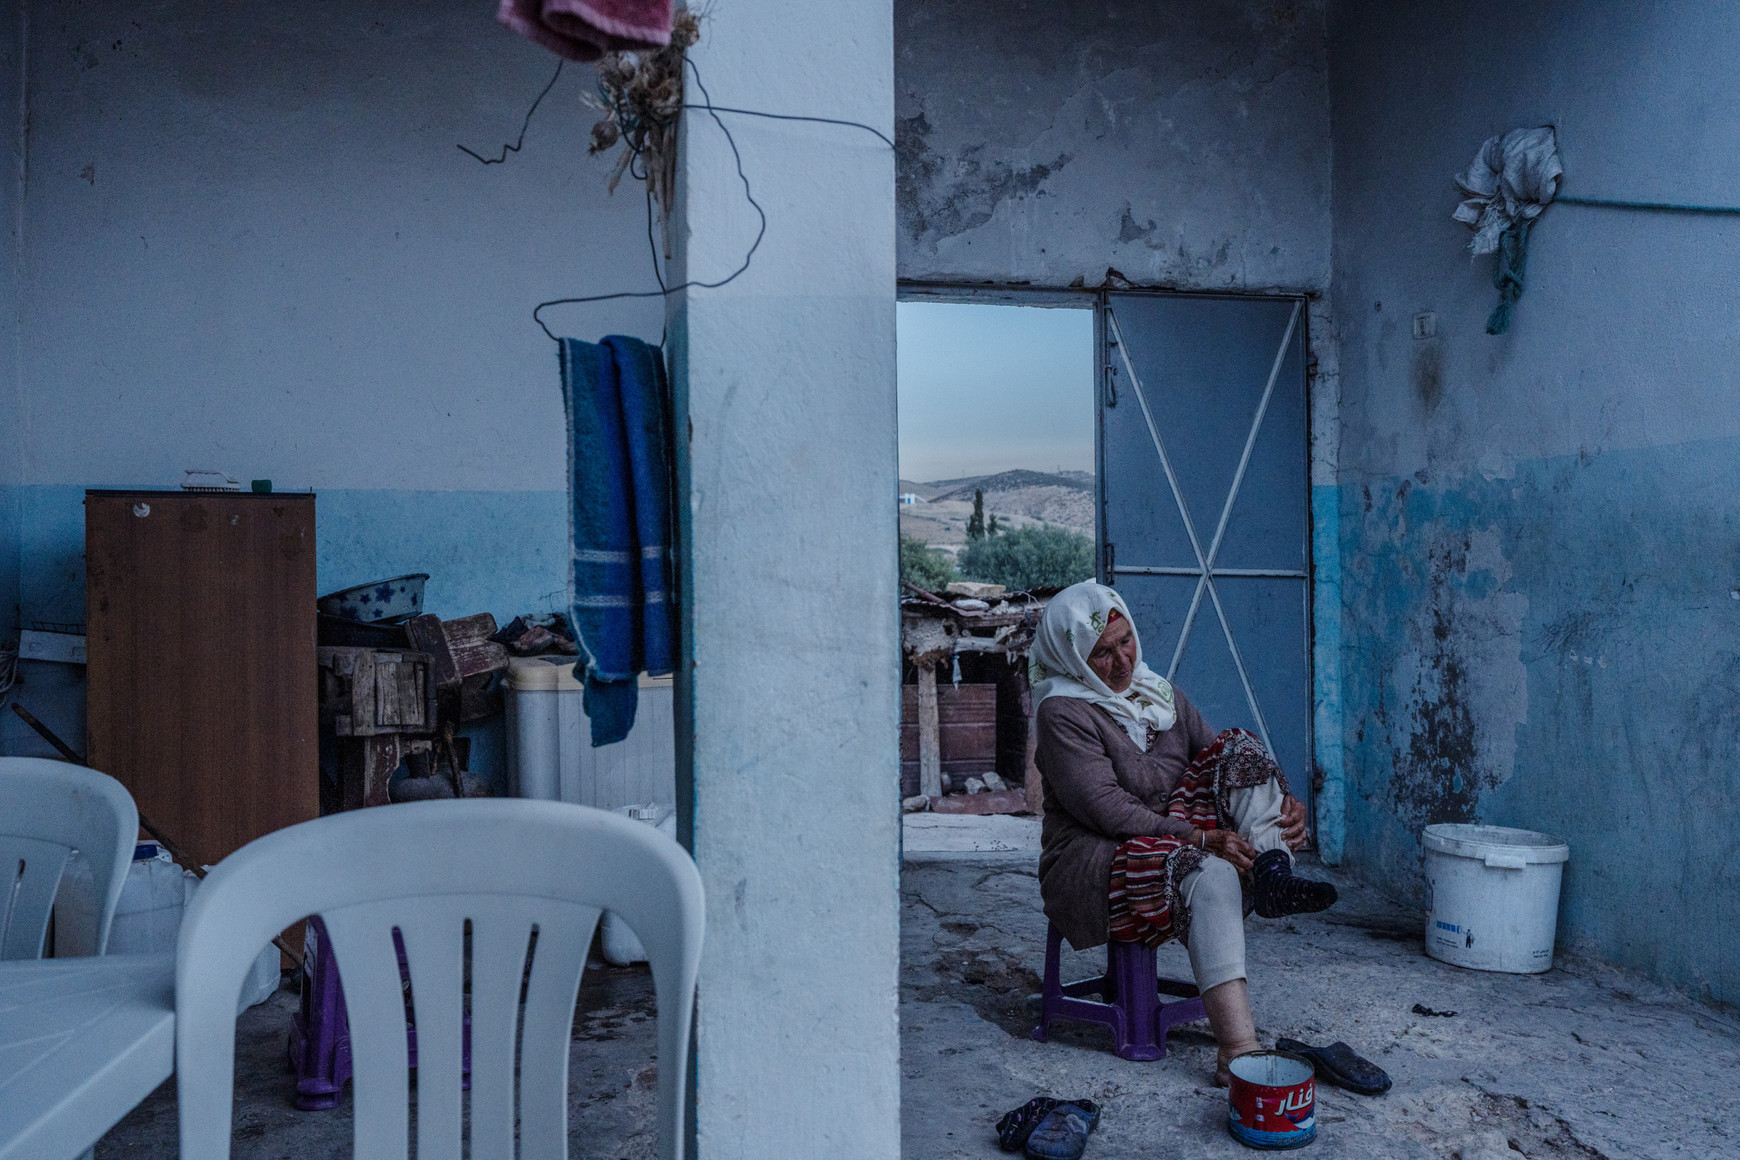 © Adrienne Surprenant Libye, Centrafrique, Somaliland - Adrienne Surprenant face aux désastres